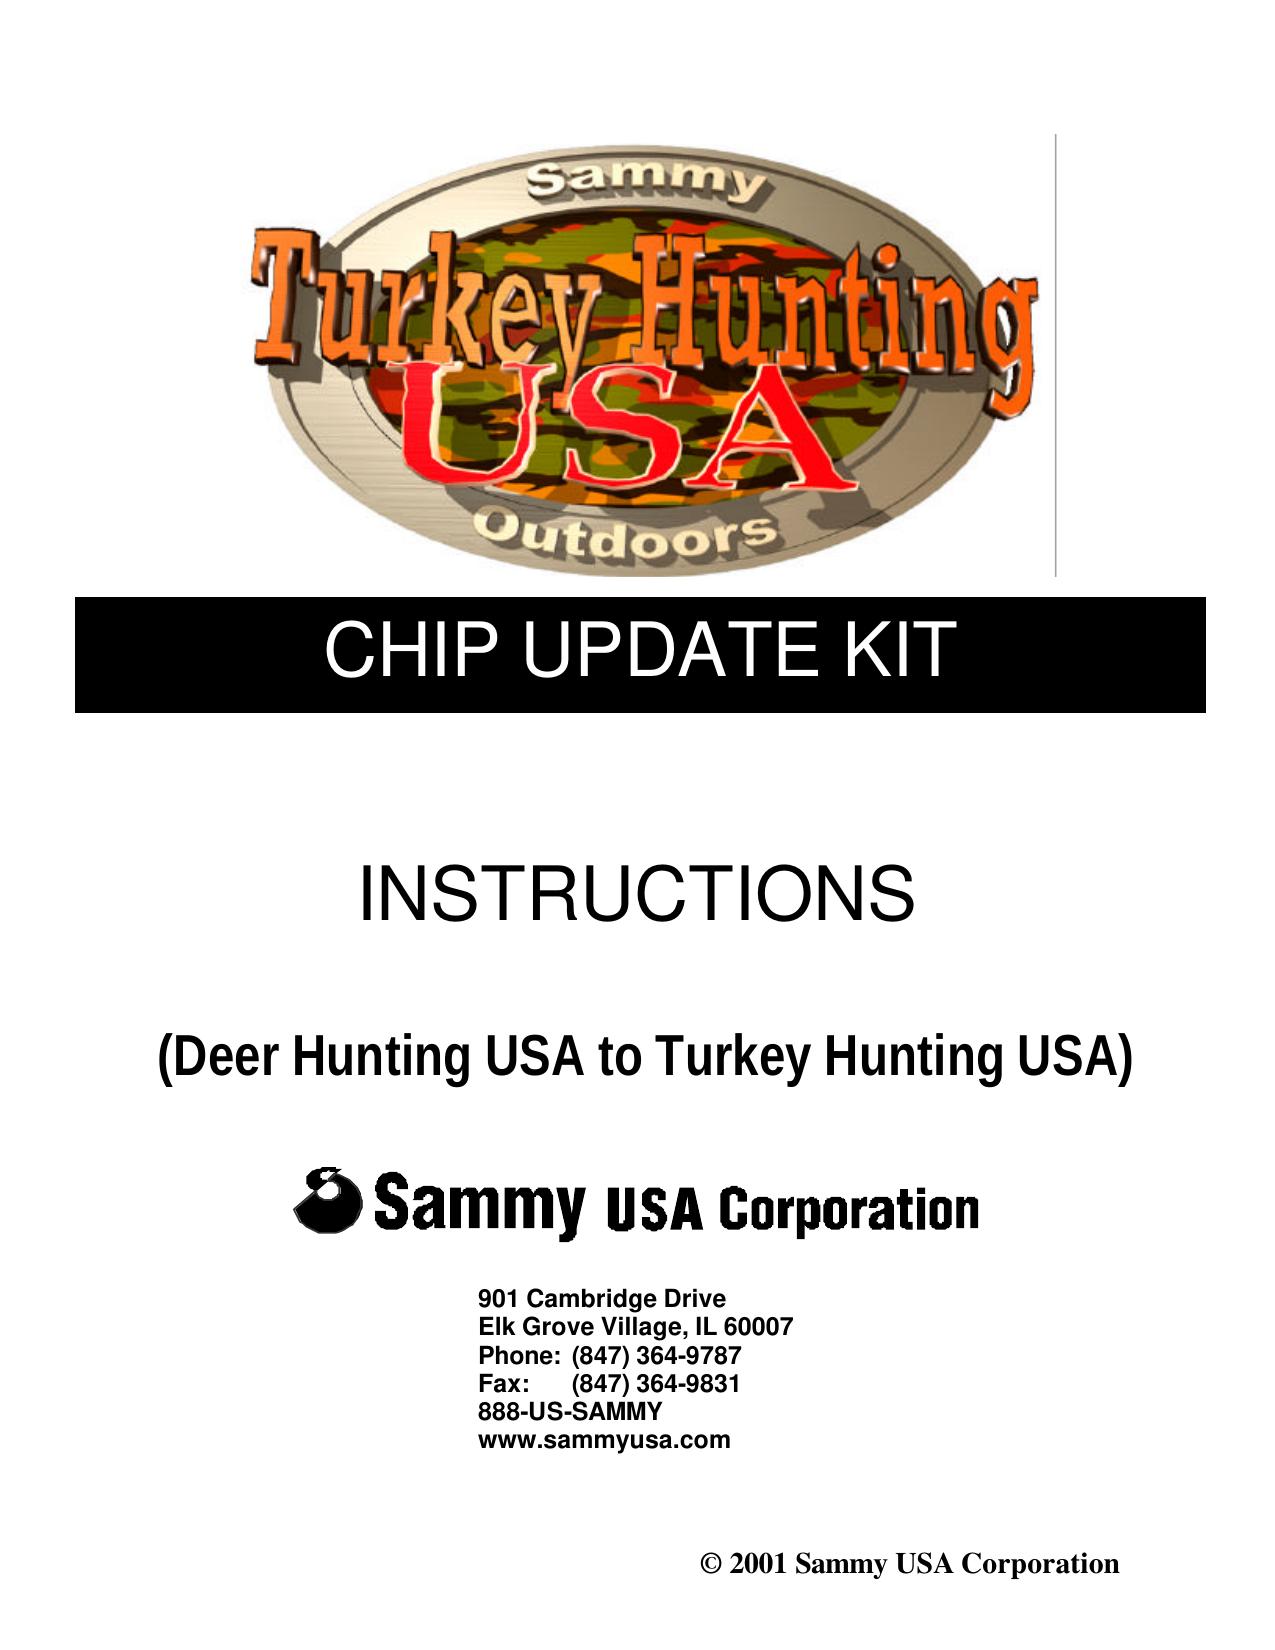 041601 Turkey Hunting USA Chip update KIT Manual.pub